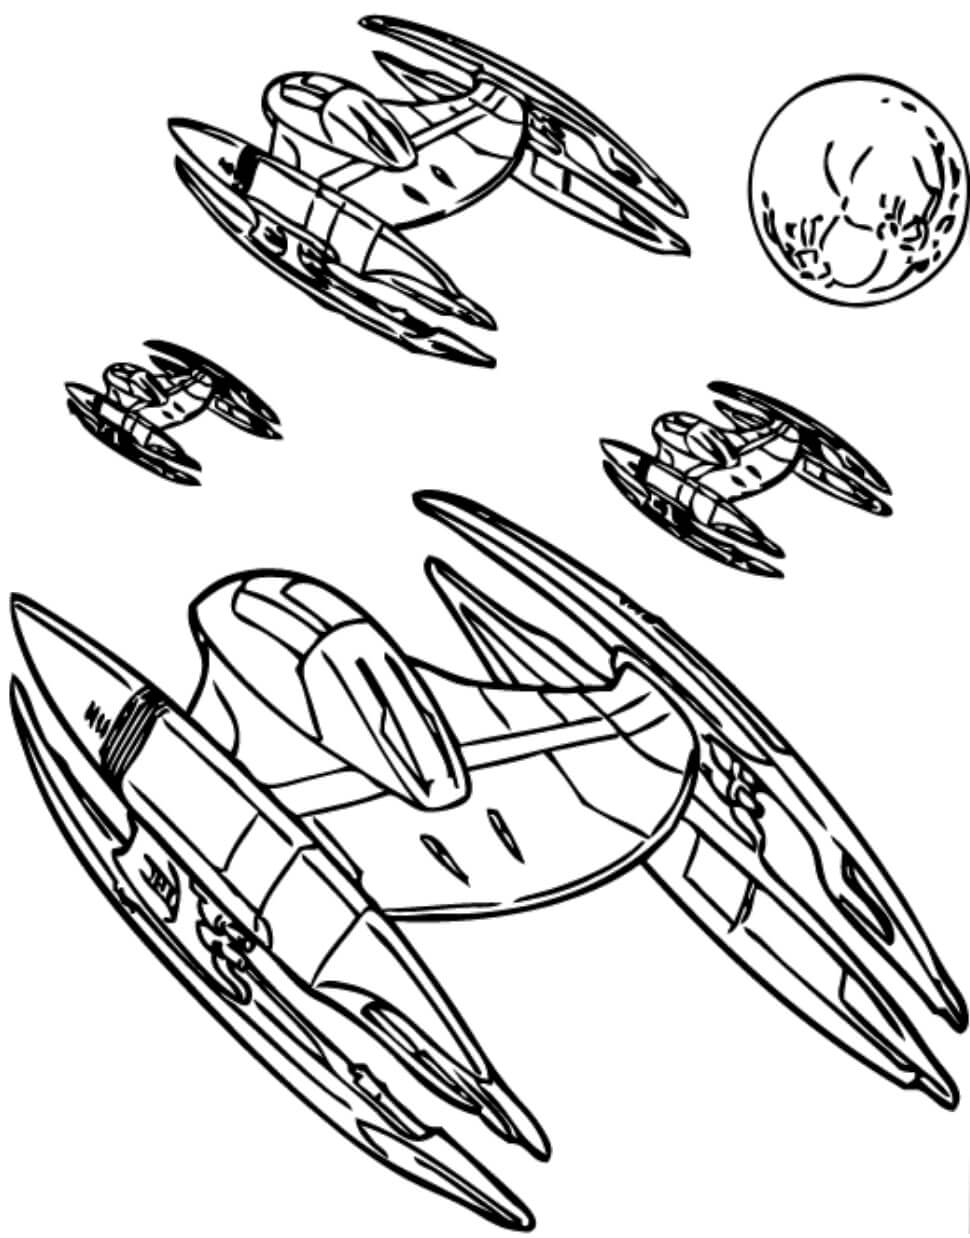 Naves espaciales de la Federación de Comercio